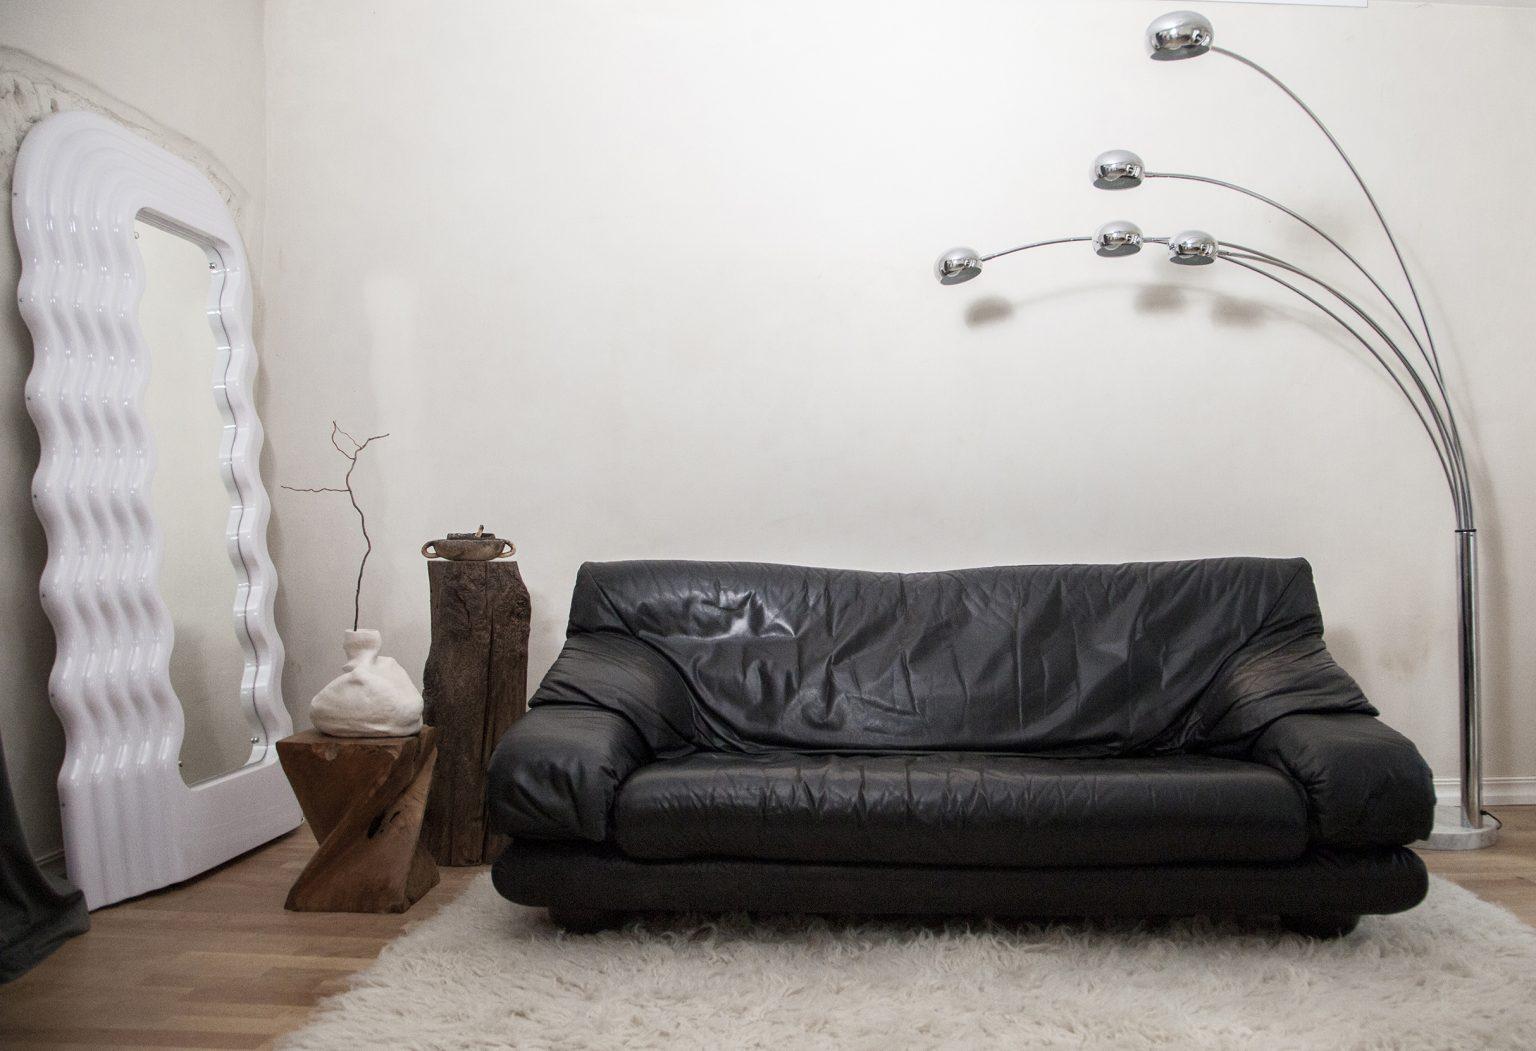 Schwarzes Ledersofa mit einer schönen Patina.

Dieses moderne Möbelstück zeichnet sich durch klare Linien, Formen und die Konzentration auf die Funktion aus. Die Rückenlehne ist verstellbar und kann in drei verschiedenen Positionen fixiert werden.